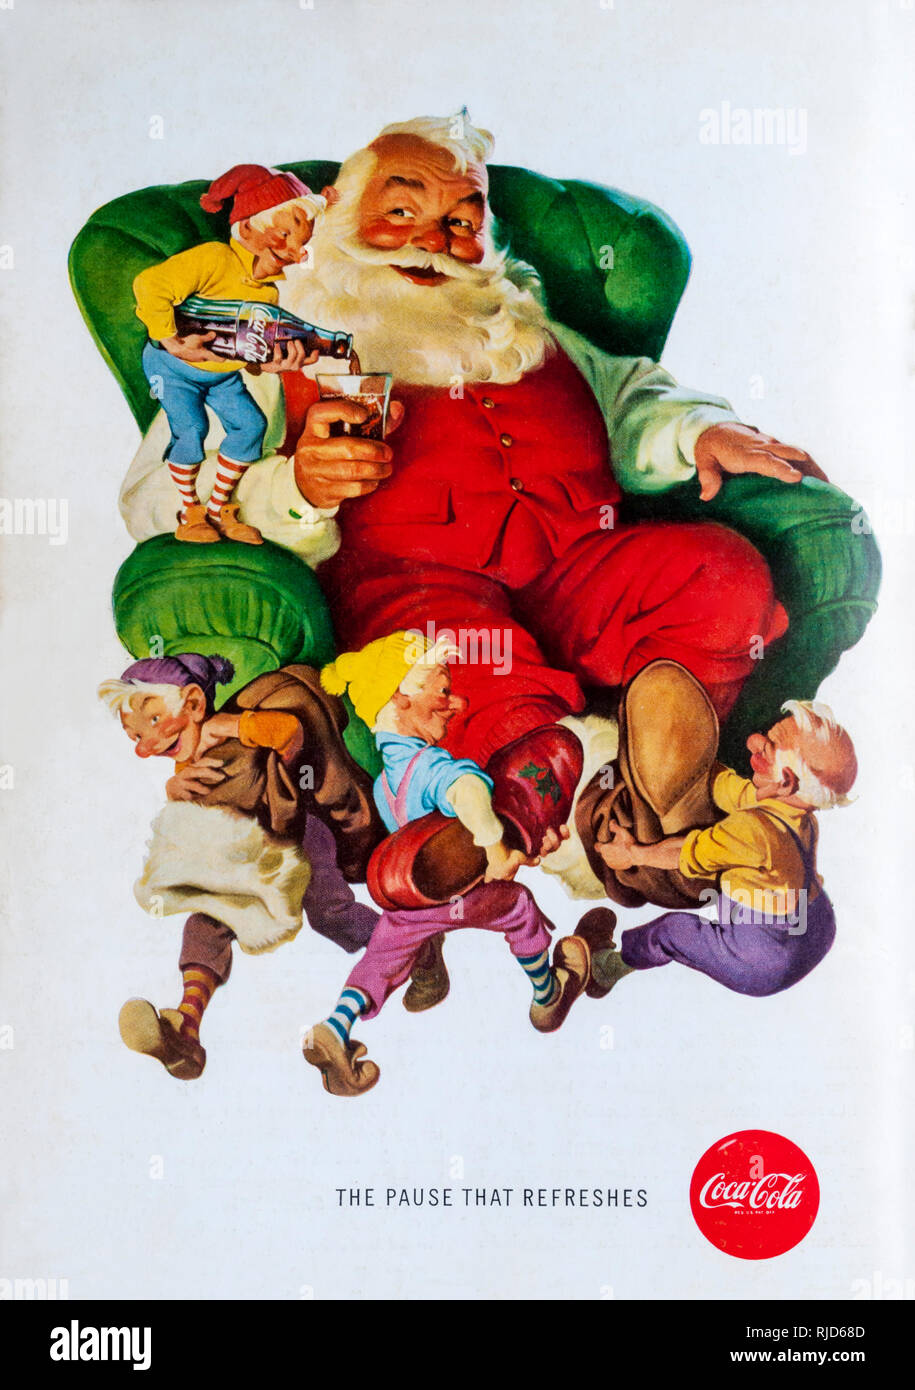 1960 magazine advert advertising Coca-Cola. Stock Photo